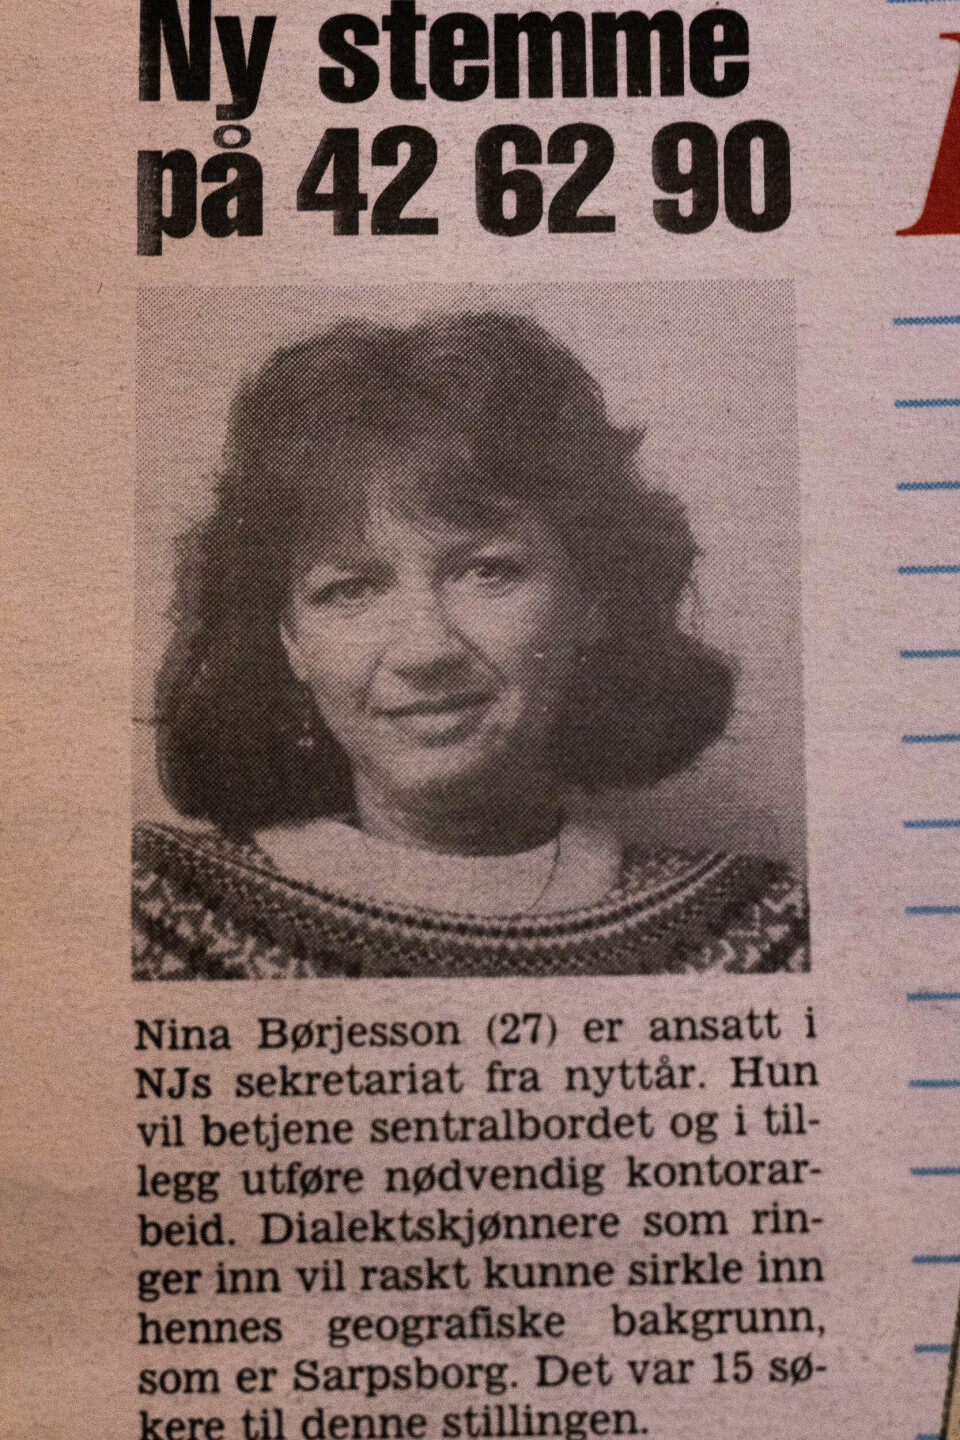 Faksimile: Da Nina fikk jobb i 1988, skrev Journalisten en liten notis om henne.